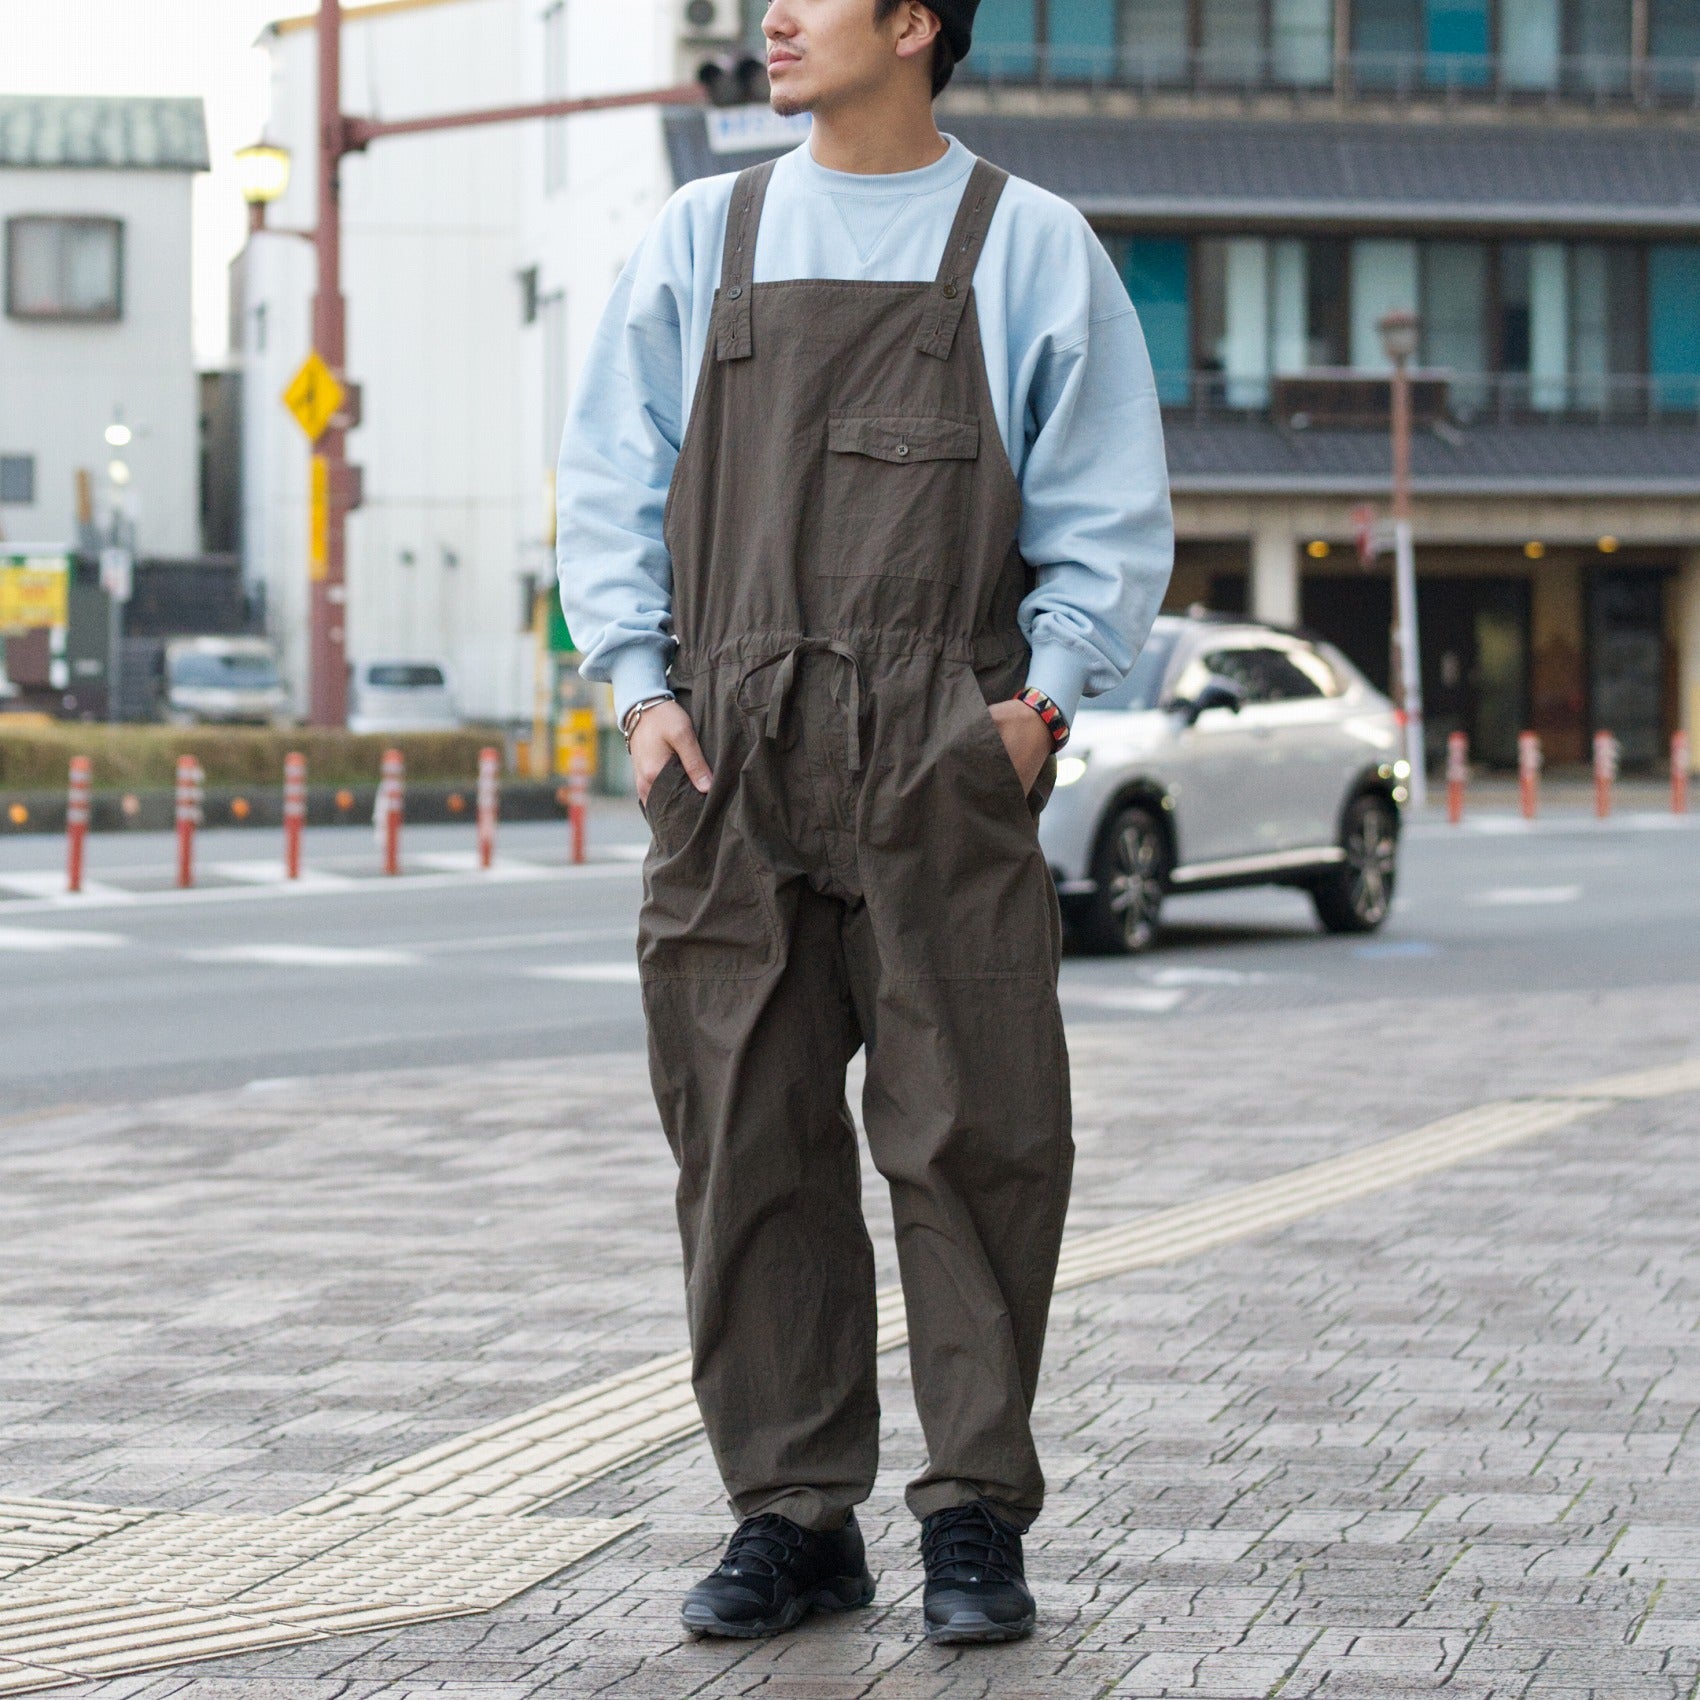 【限定品お得】yoko sakamoto サスペンダー付きワークパンツ L 黒 状態極上 パンツ